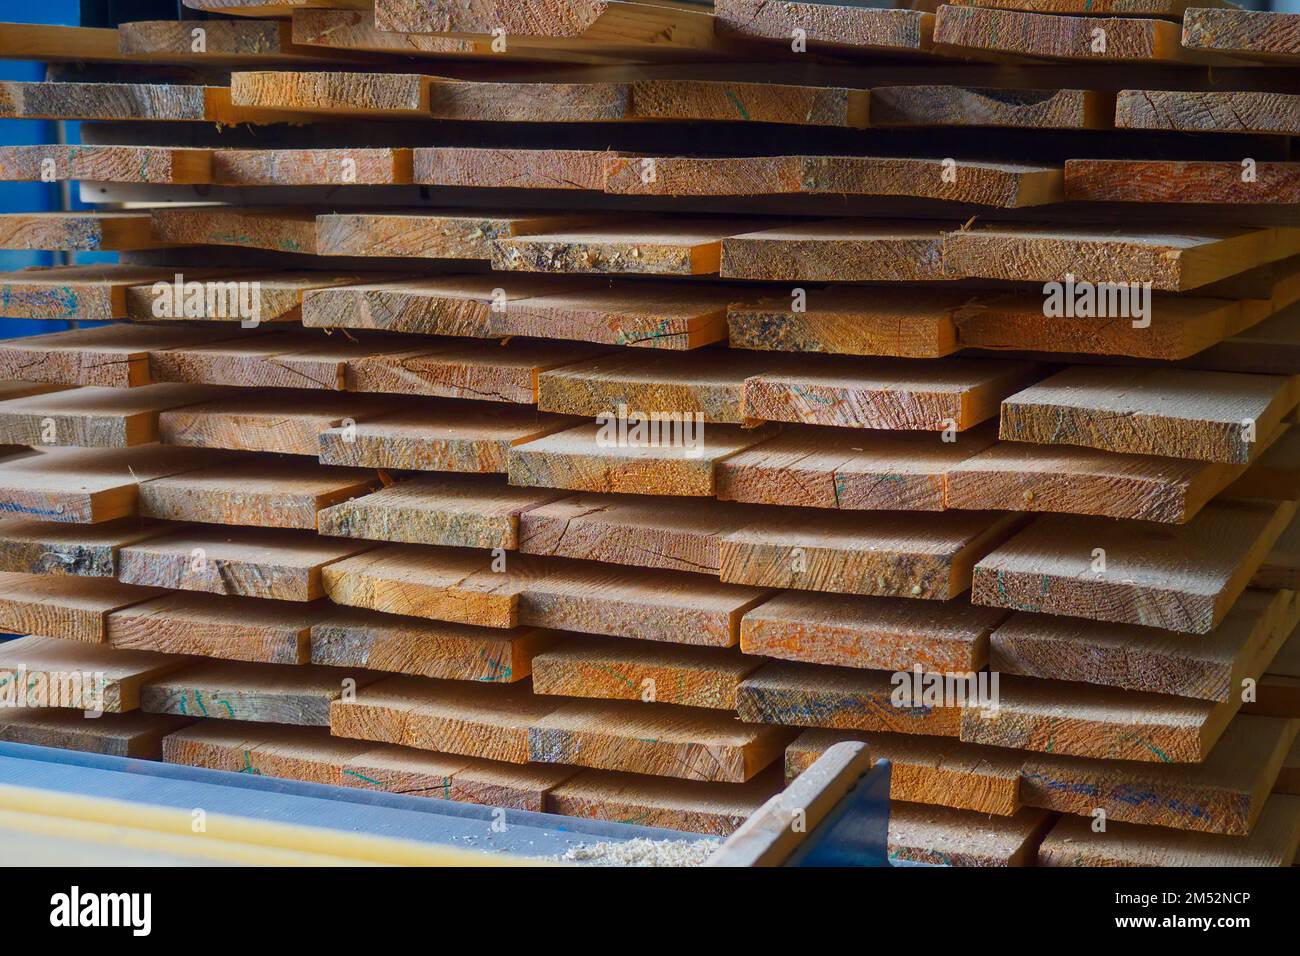 Holzbretter werden in einem Sägewerk oder einer Schreinerei gestapelt. Sägen Trocknen und Vermarktung von Holz. Industrieller Hintergrund. Stockfoto